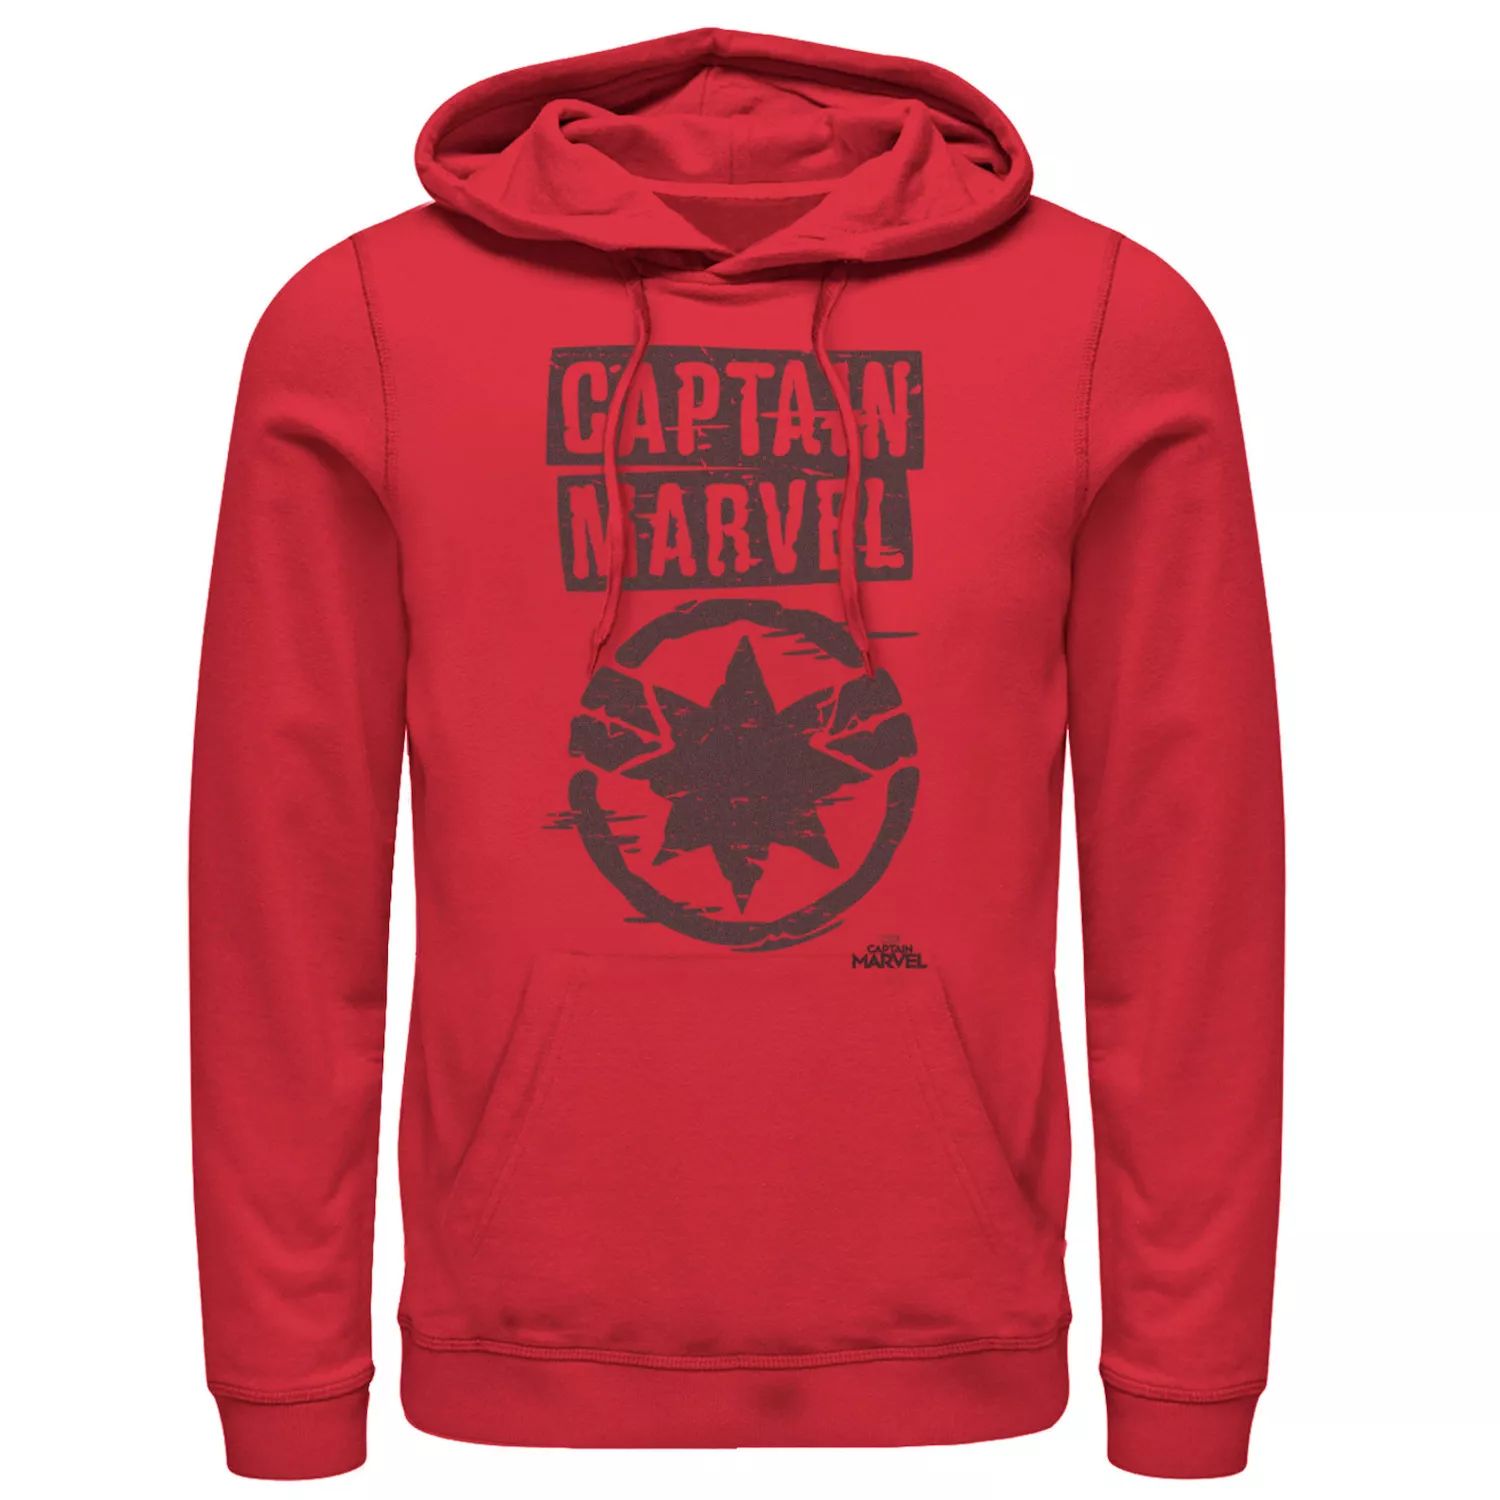 Мужская худи с графическим рисунком и логотипом Marvel Captain Marvel мужская футболка с рваным винтажным круглым логотипом marvel captain marvel и графическим рисунком